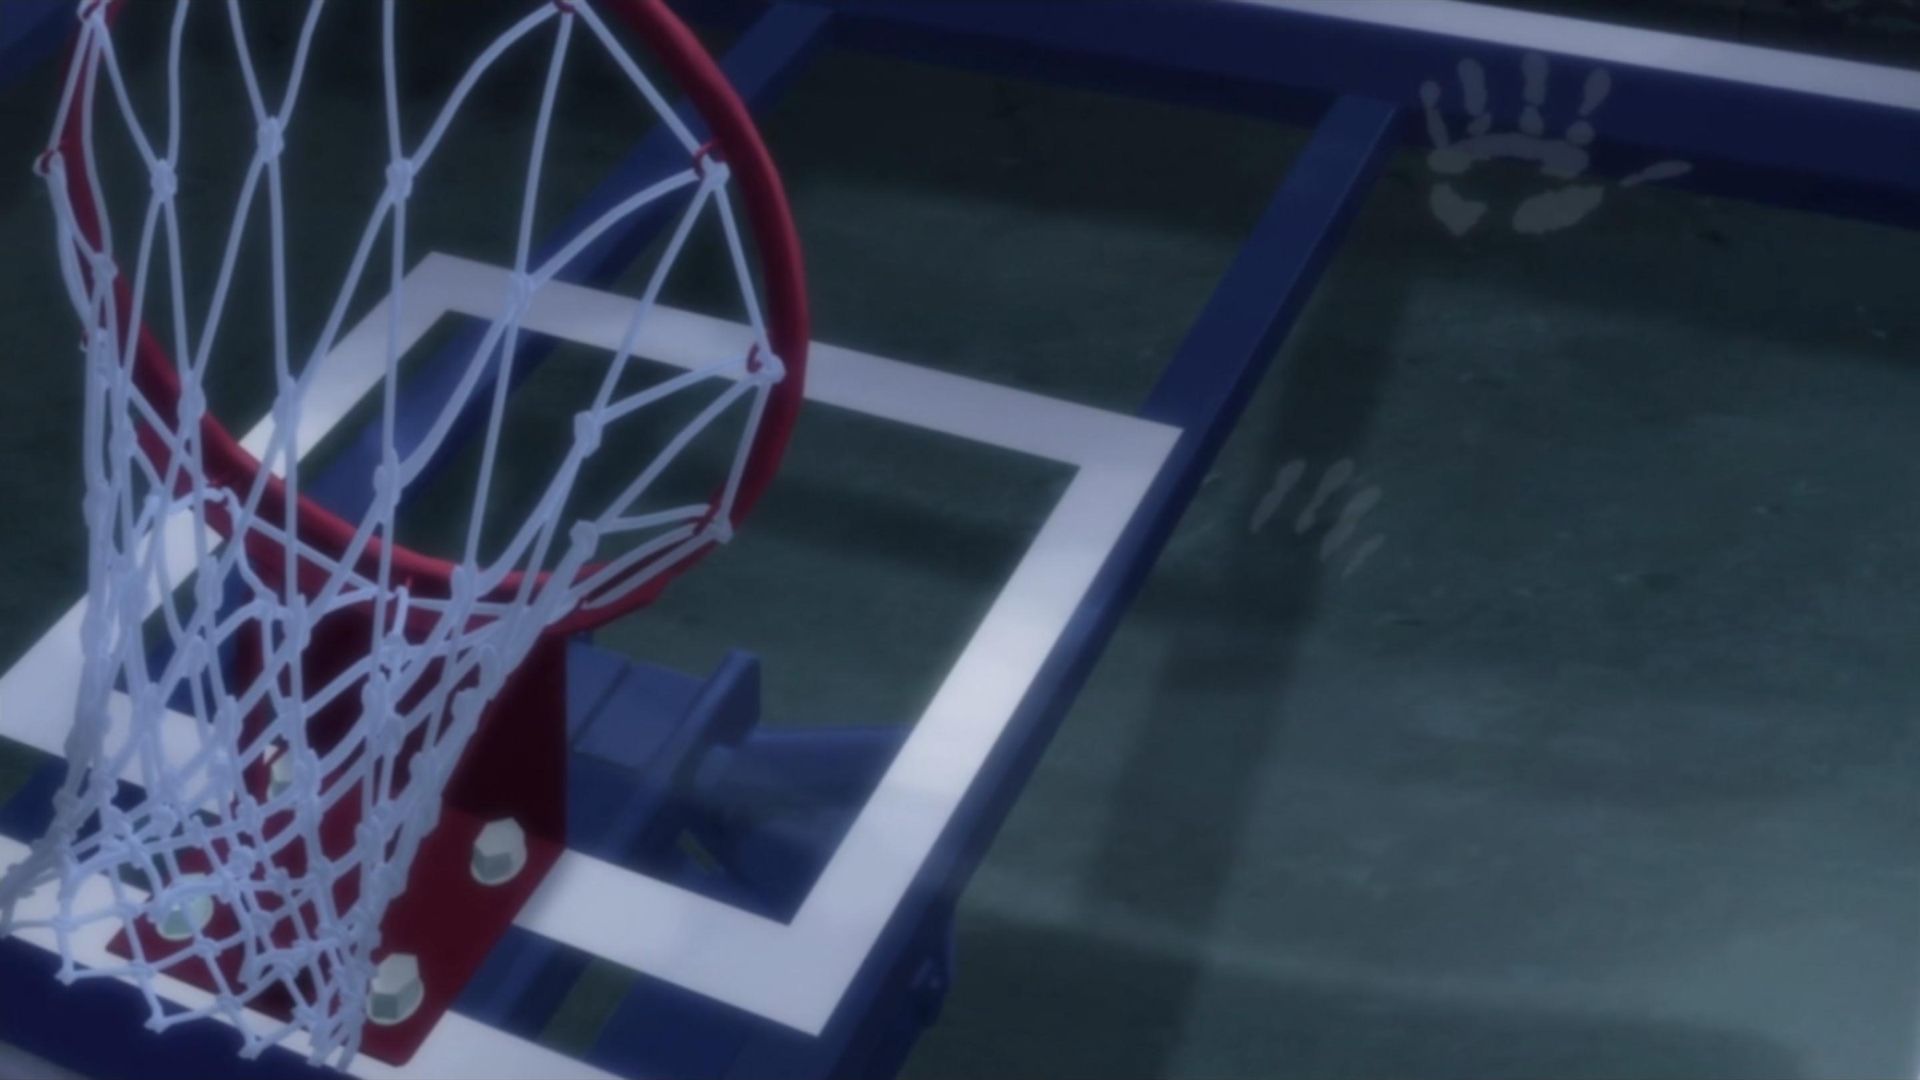 Kuroko's Basketball background